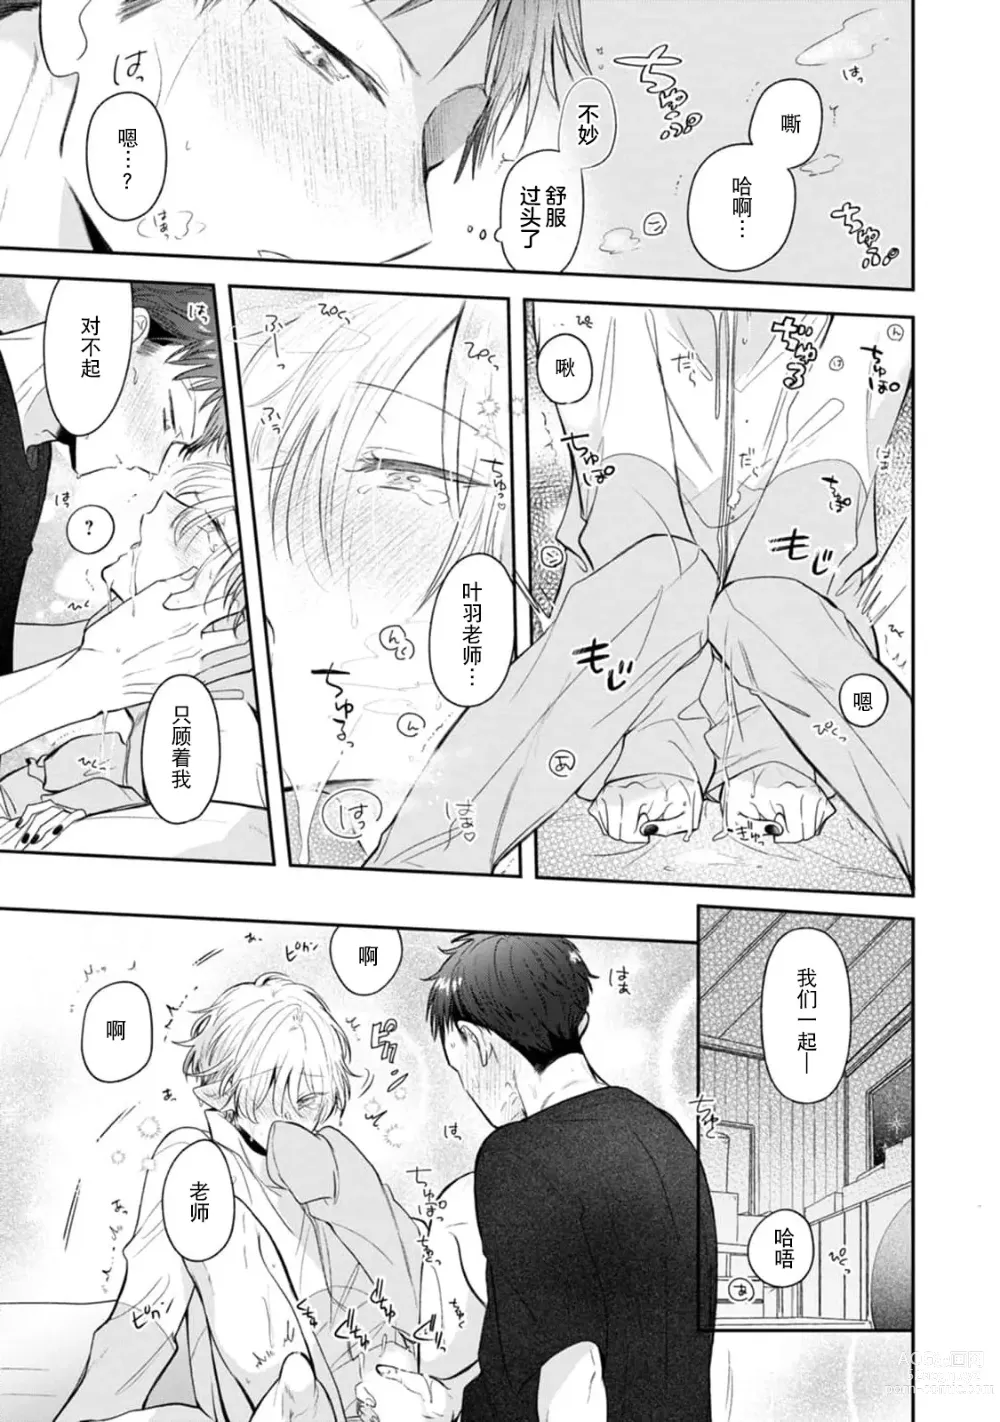 Page 147 of manga 叶羽老师全部是第一次 1-4